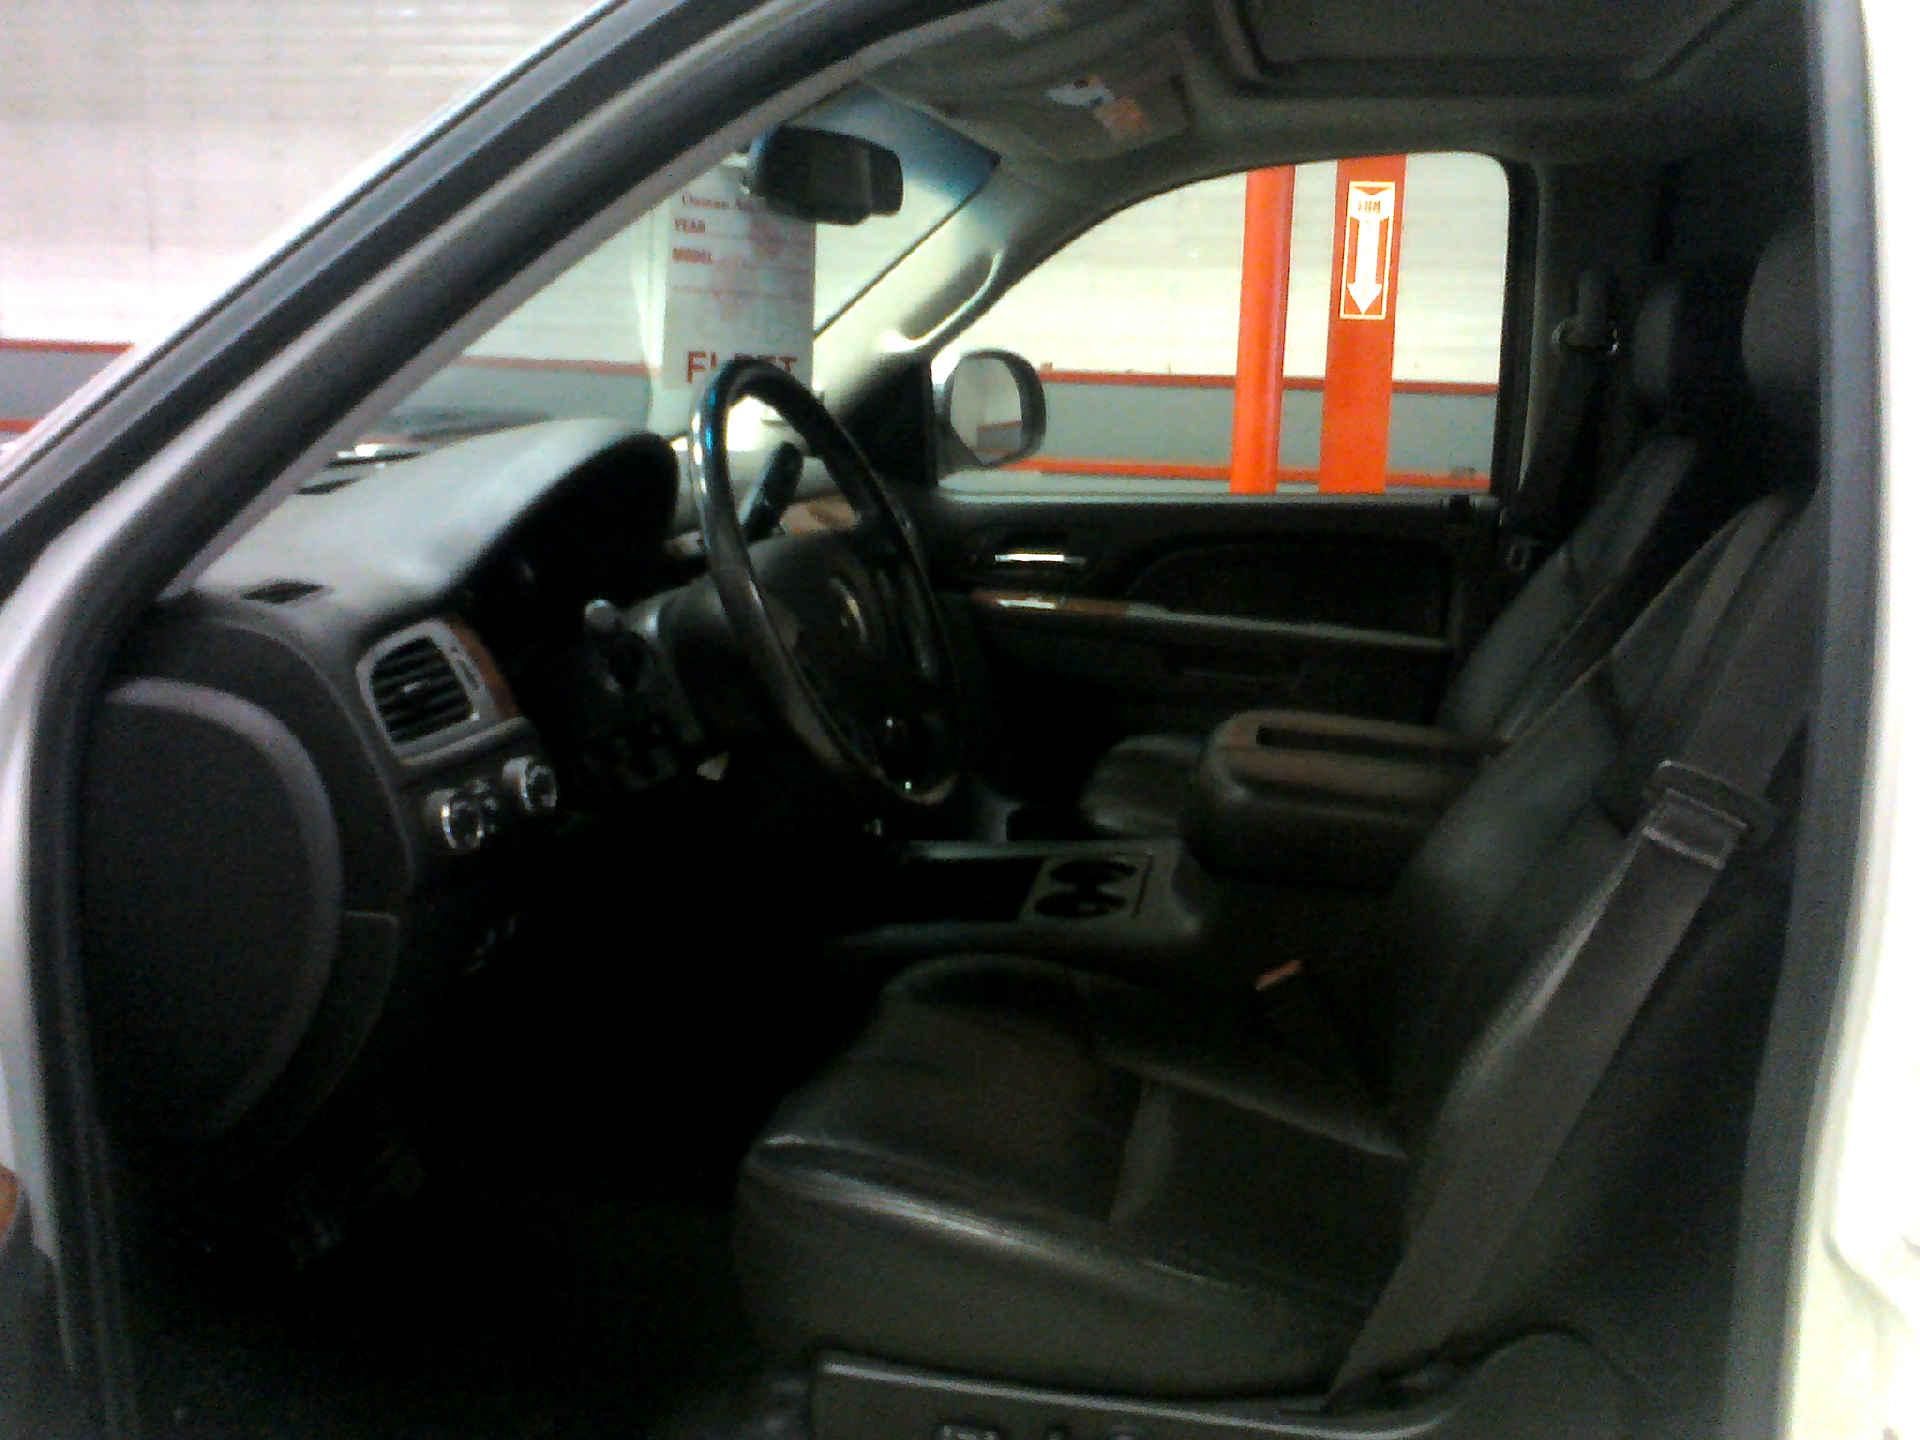 2011 CHEVROLET SILVERADO 1500 LTZ CREW CAB 4WD 5.3L V8 OHV 16V FFV AUTOMATIC SN:3GCPKTE30BG224381 - Image 5 of 9